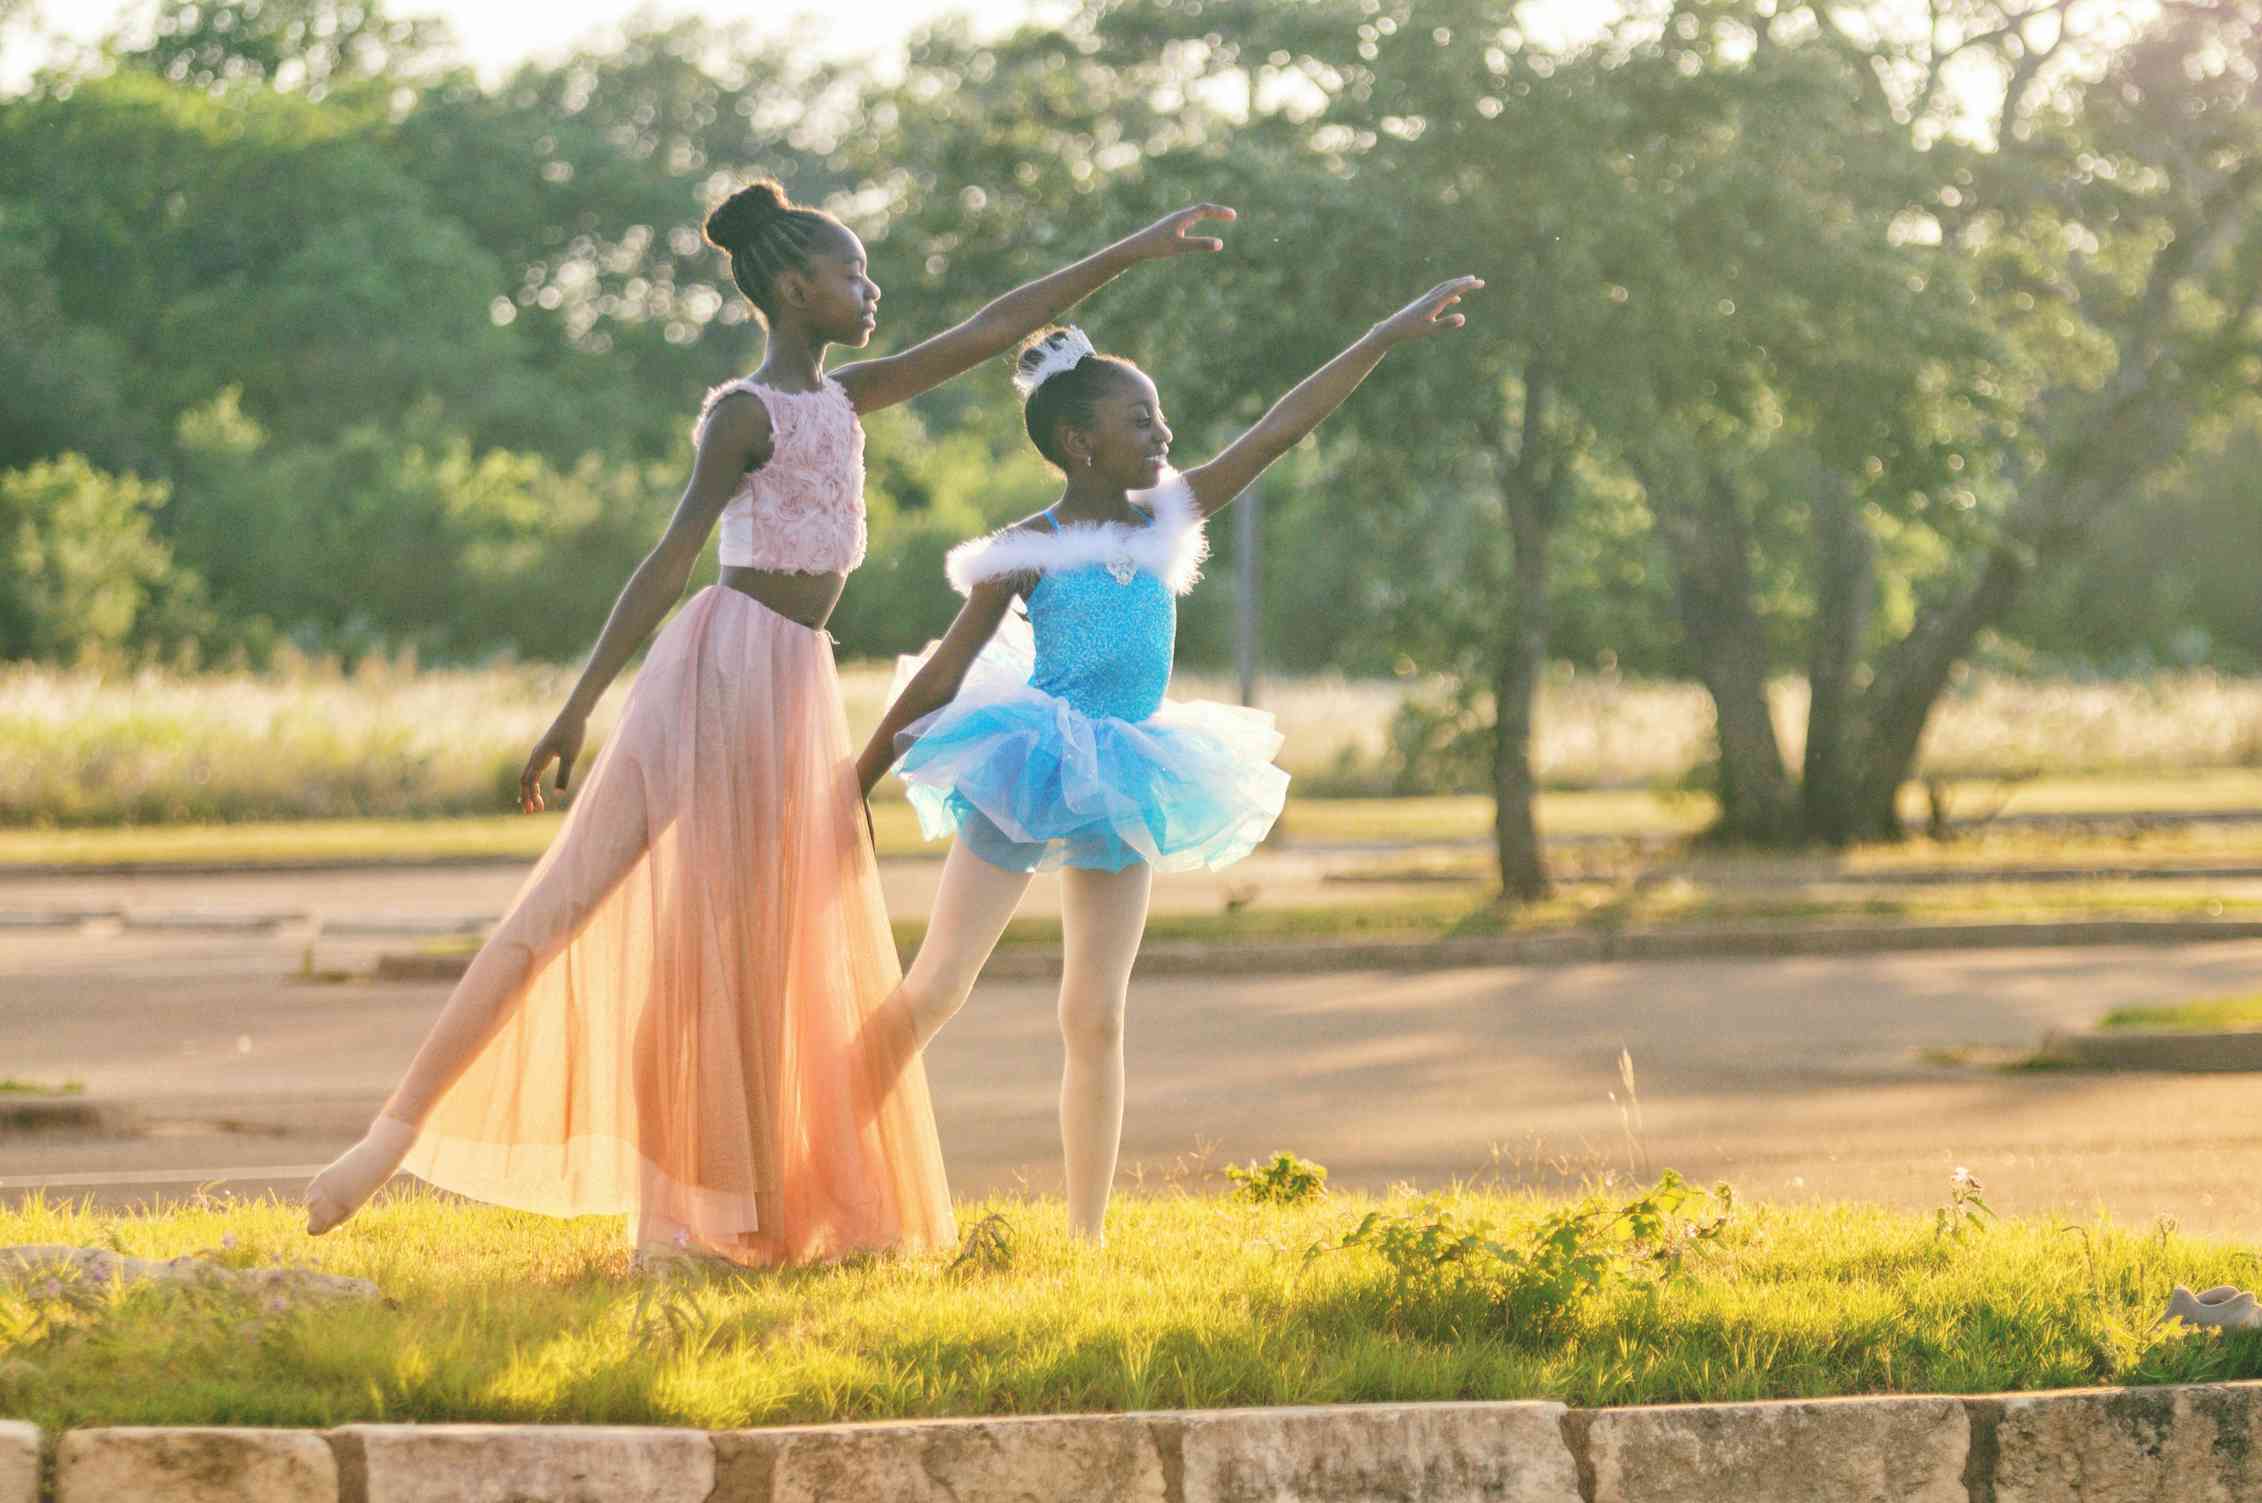 Two young Black girls dancing